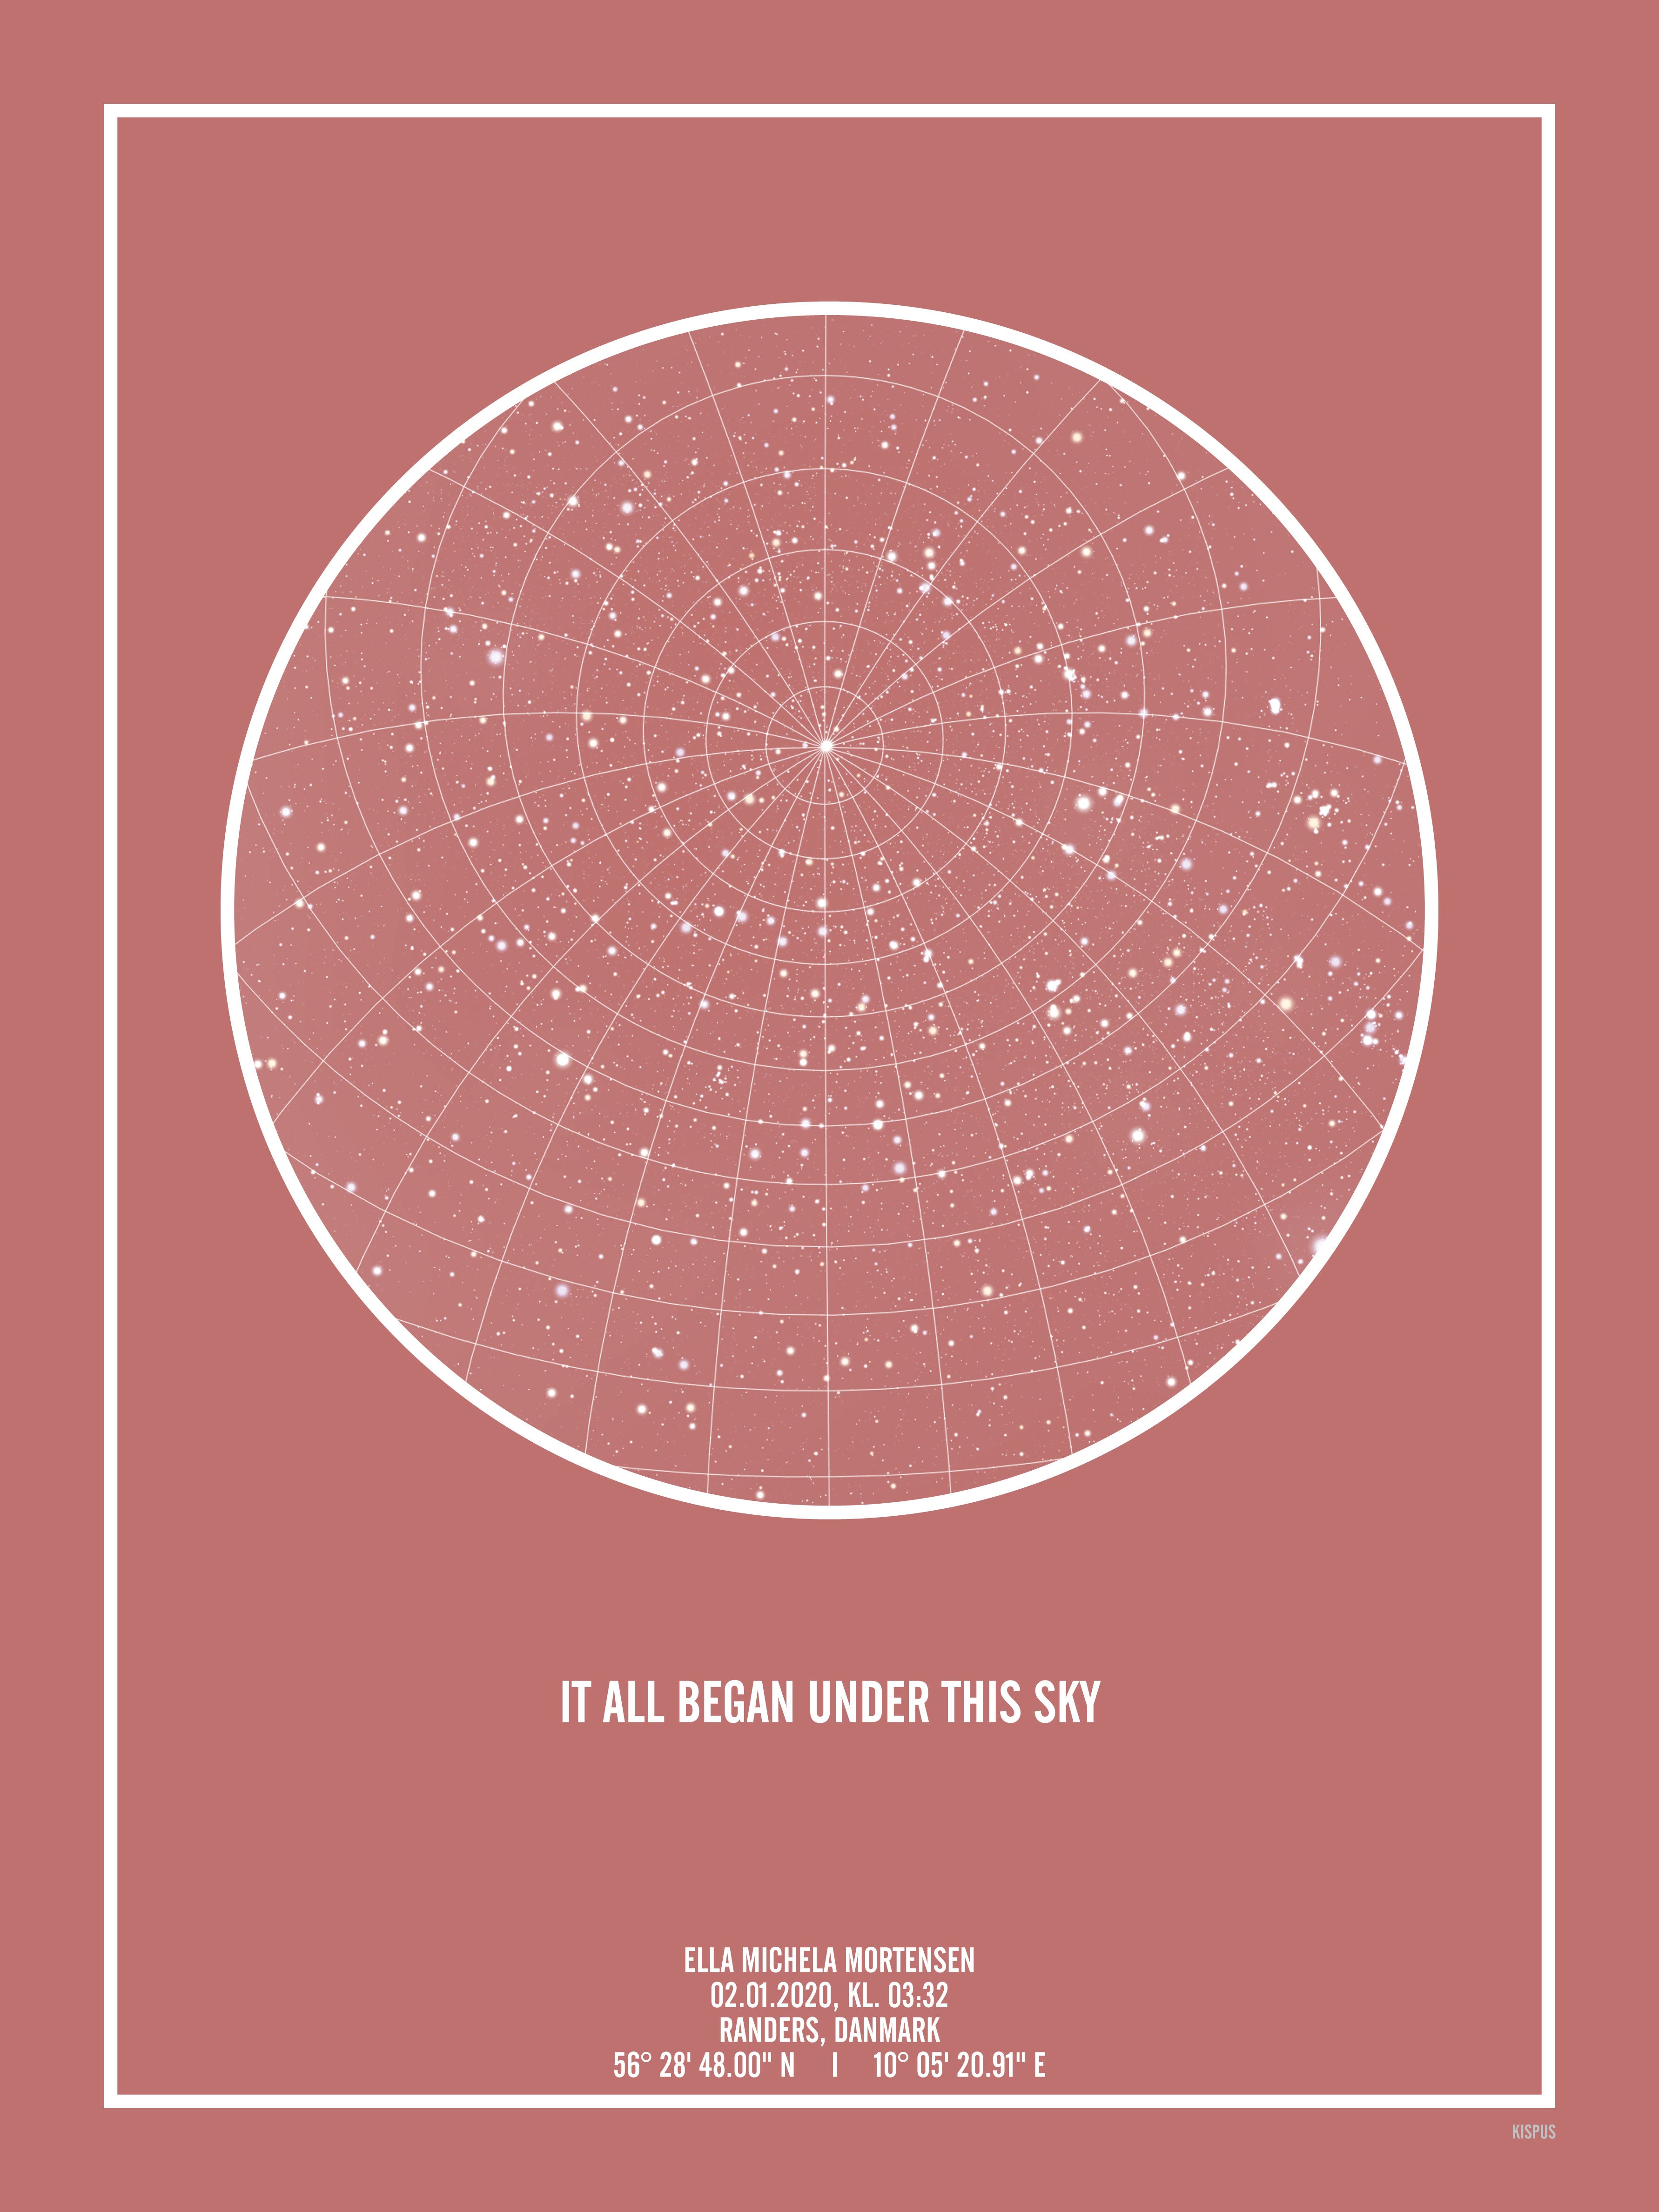 Se PERSONLIG STJERNEHIMMEL PLAKAT (BLUSH) - 50x70 / Hvid tekst + blush-farvet stjernehimmel / Stjernehimmel med gitter hos KISPUS